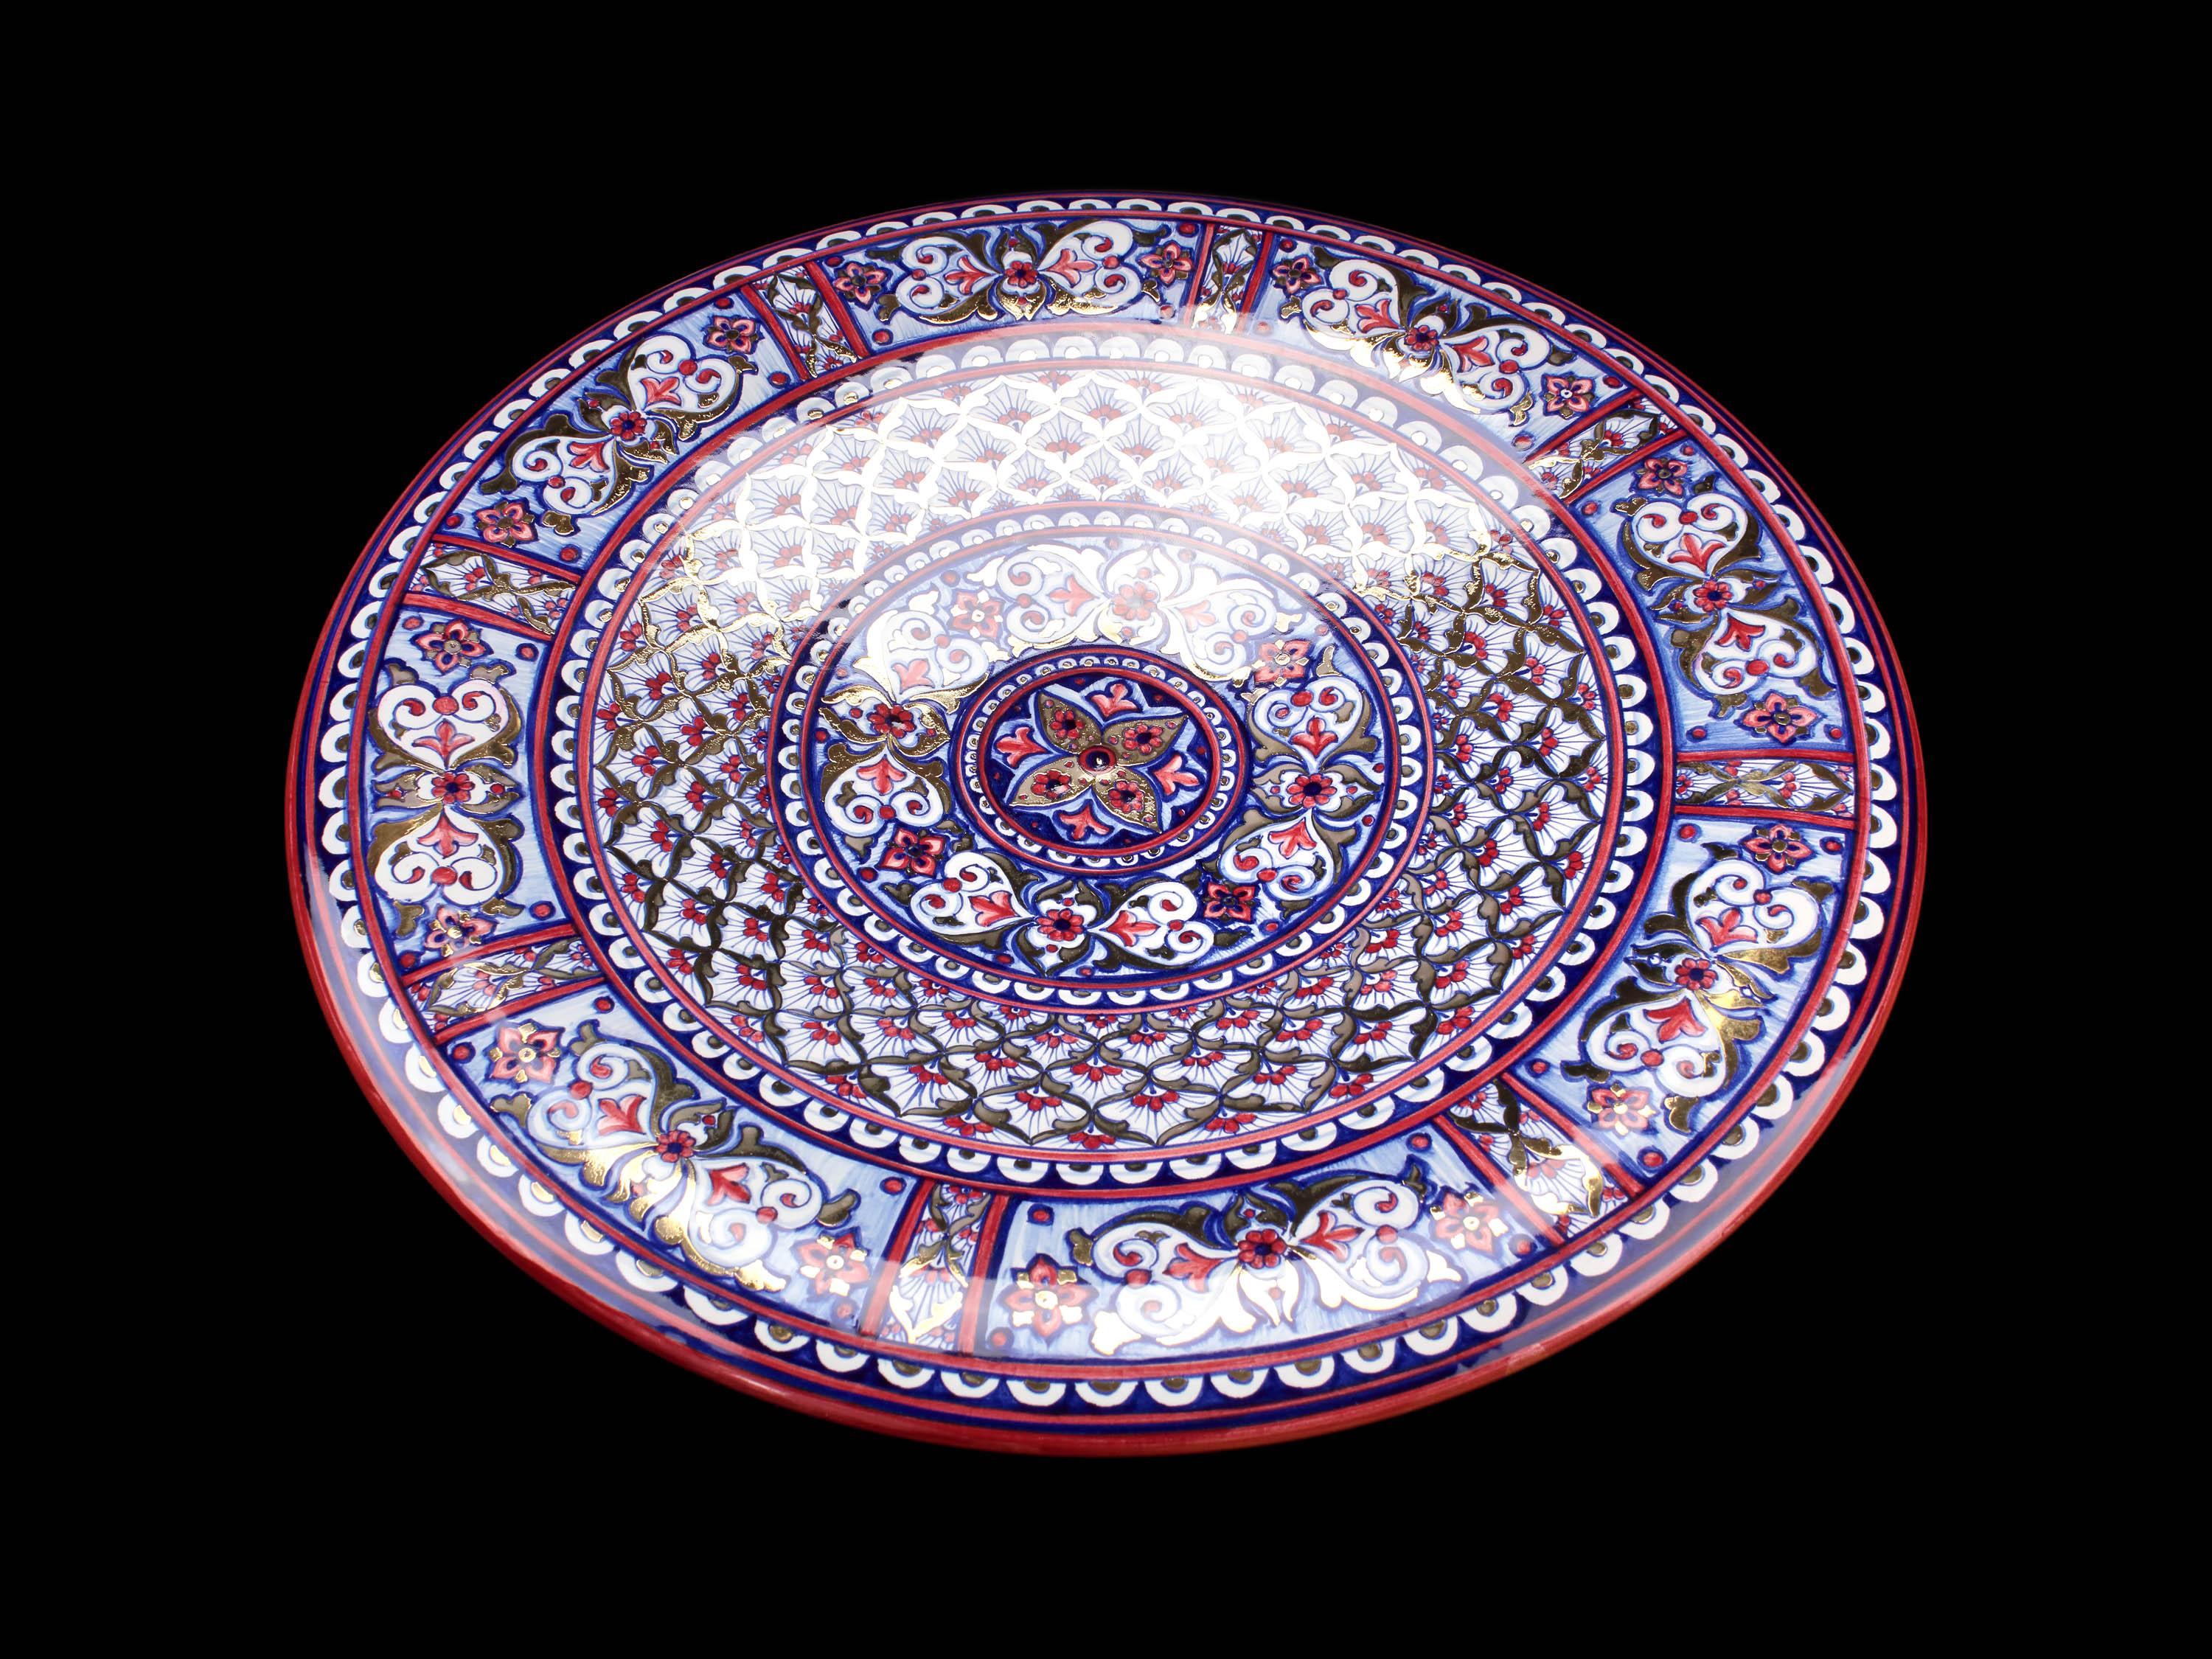 Die Schale aus blau und rot bemalter Majolika weist auf ihrer gesamten Oberfläche ein dichtes, vom maurischen Stil inspiriertes Dekor auf. Das äußere Band der Krempe ist reich mit spiralförmigen Pflanzenornamenten verziert, die sich